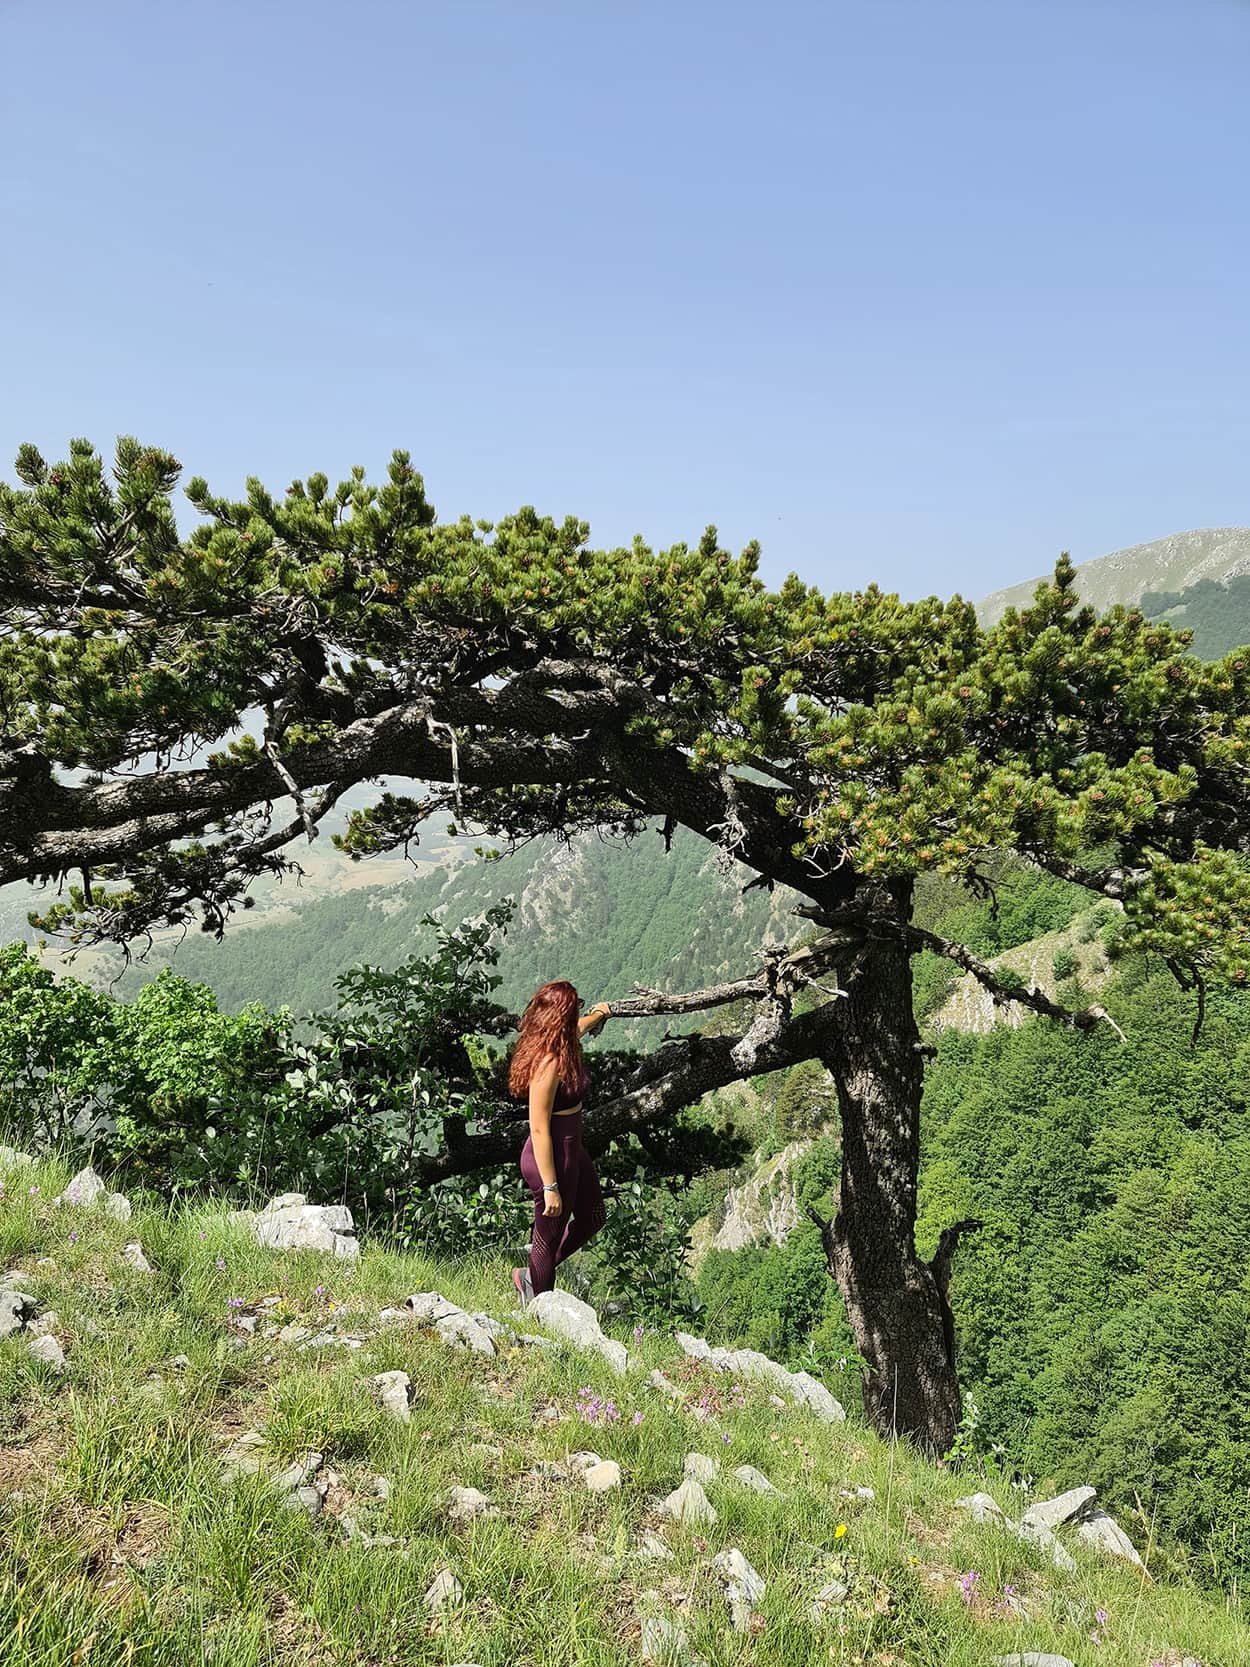 Carlotta in piedi accanto ad un pino loricato, pianta tipica che si può visitare sul pollino